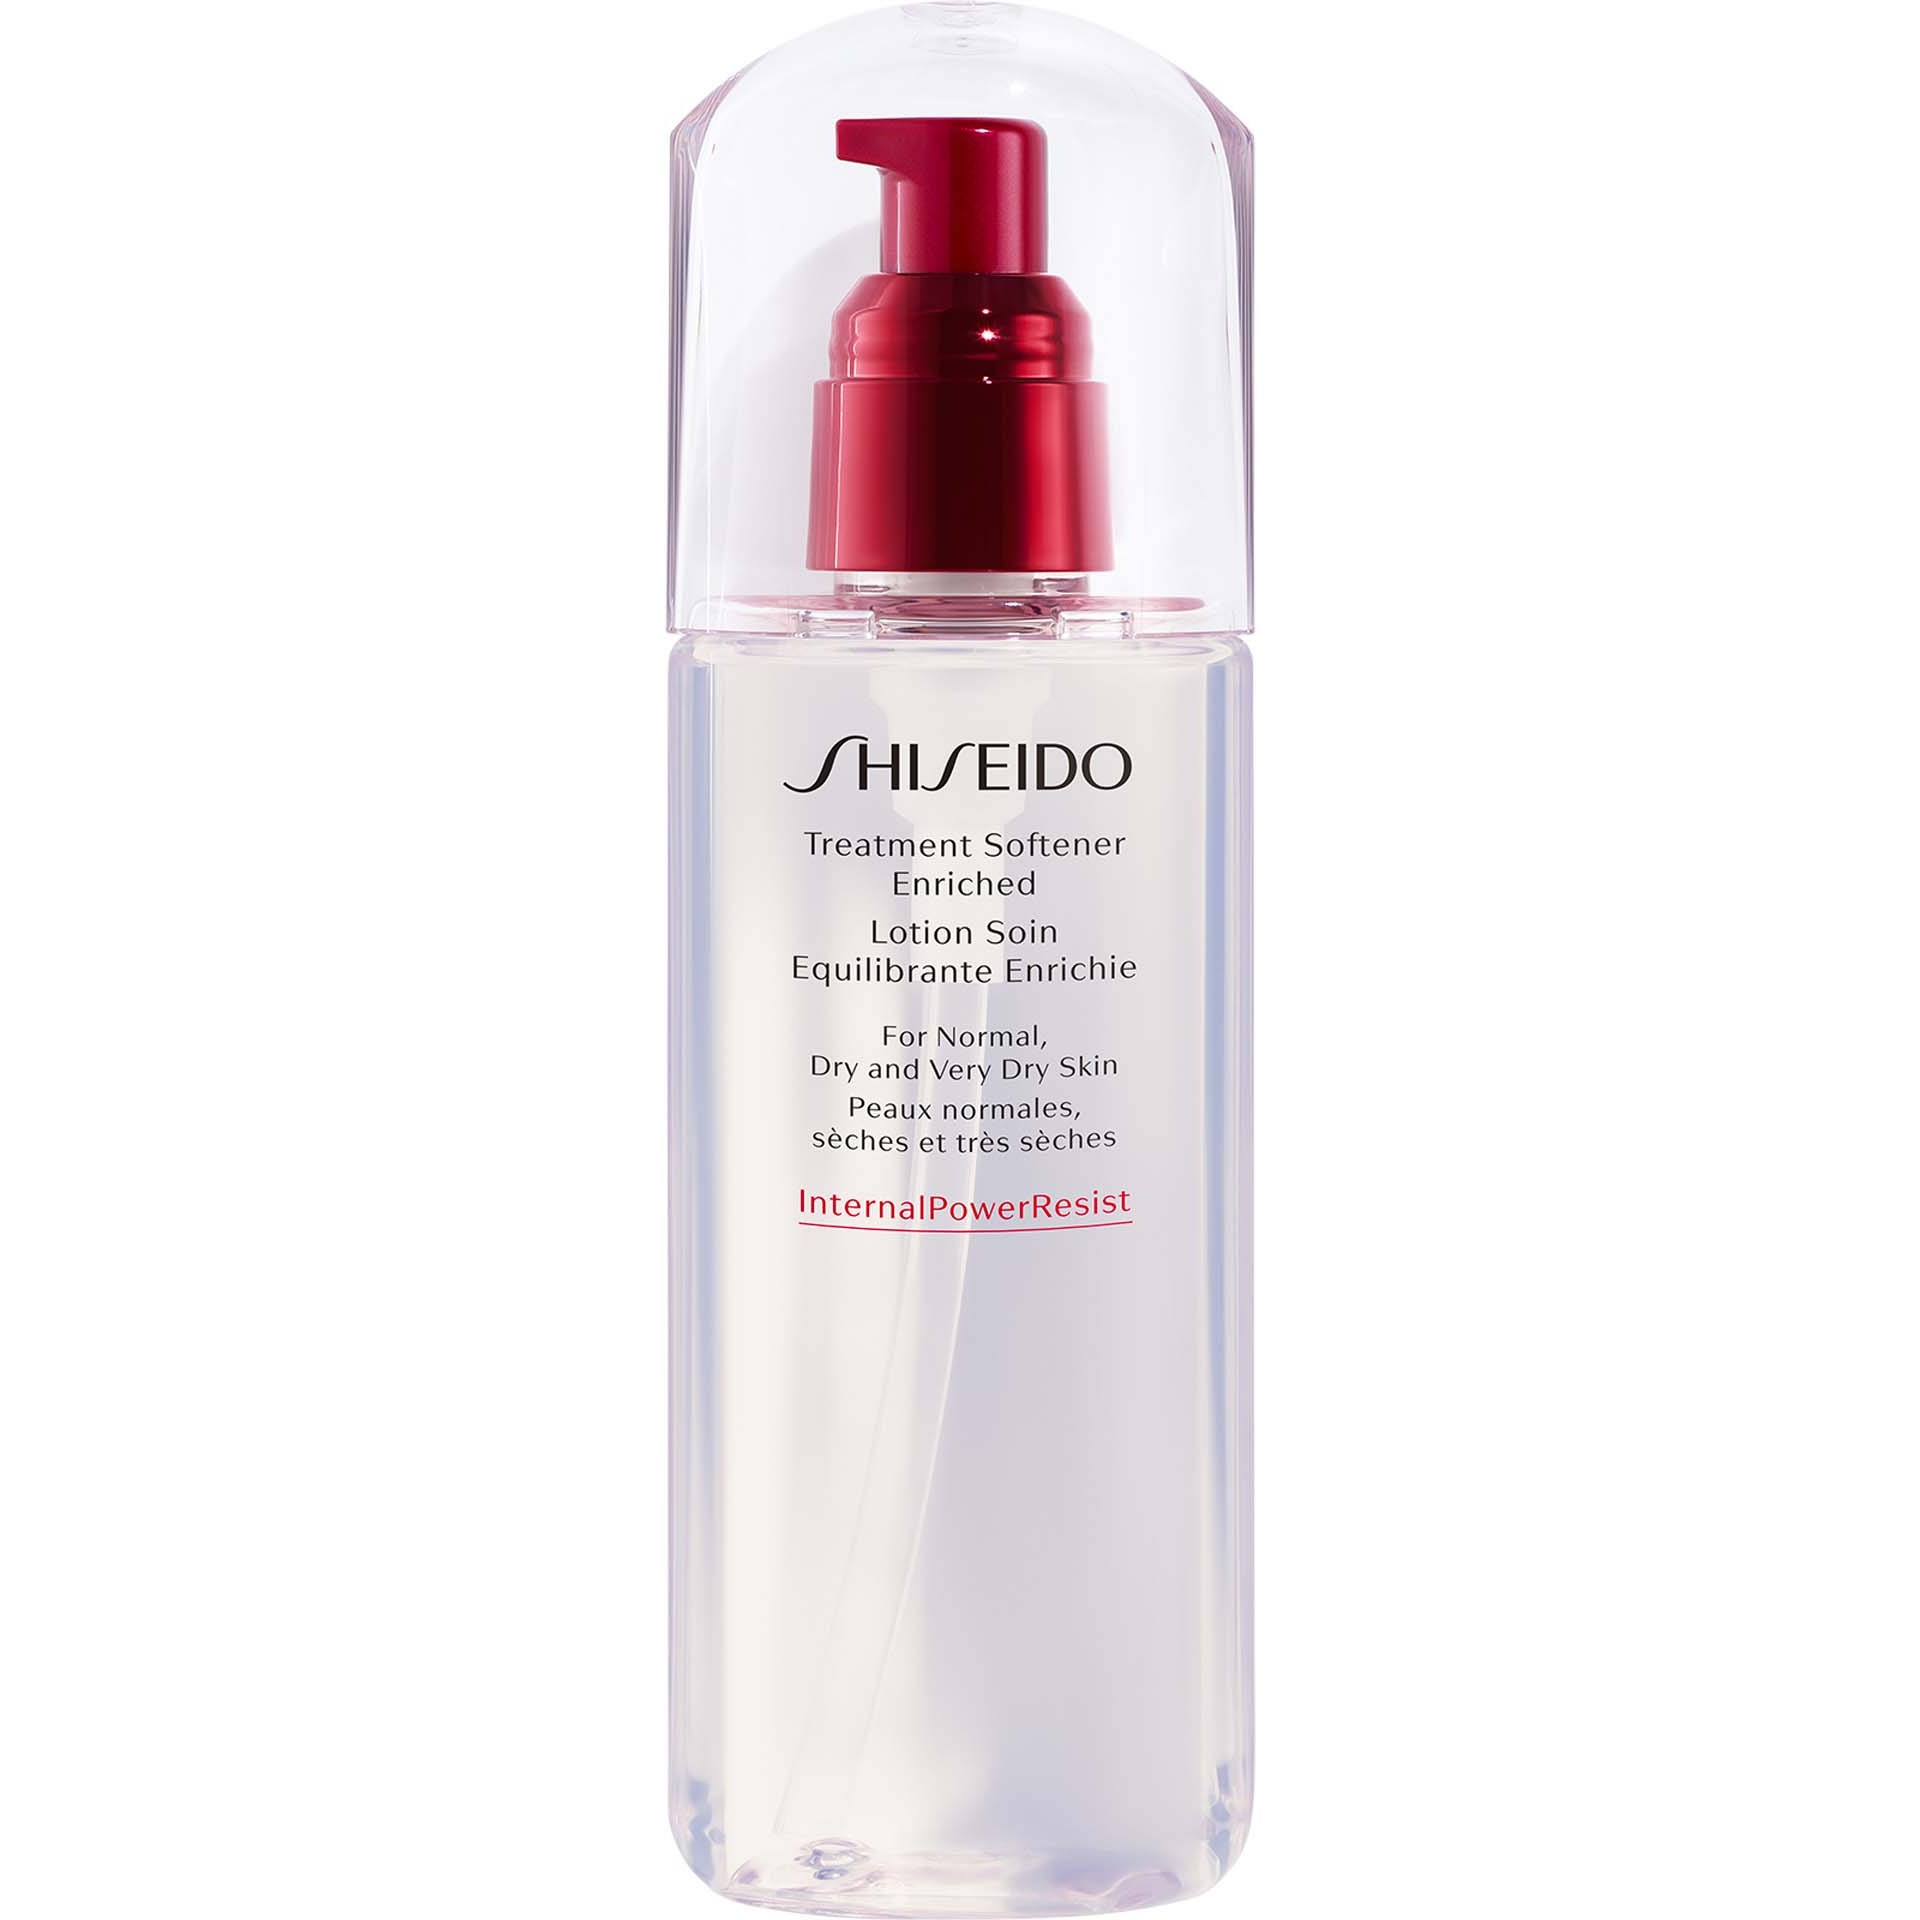 Shiseido D-prep Defend Treatment softener enriched